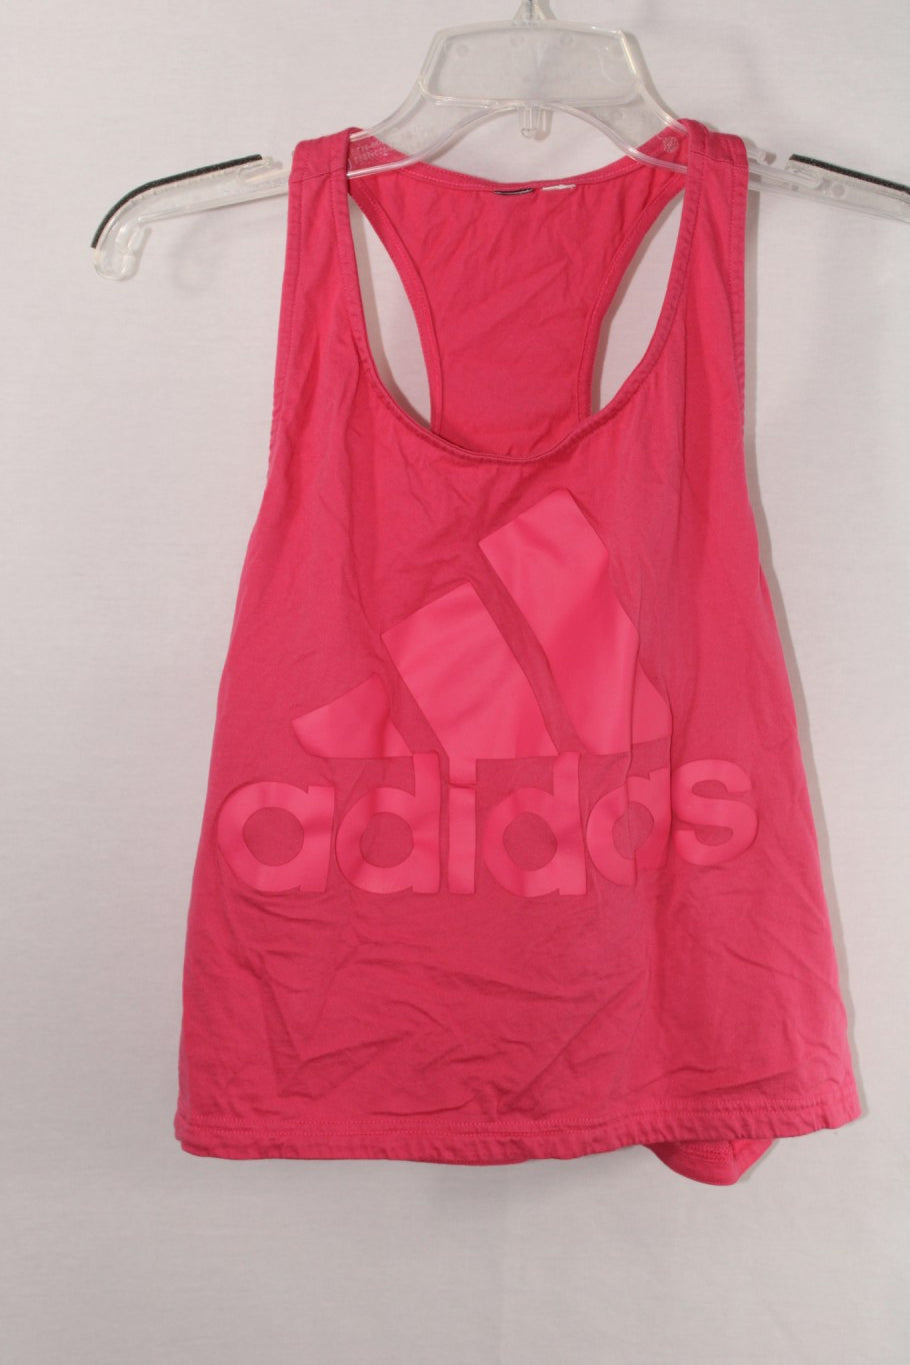 Adidas Pink Shirt | M